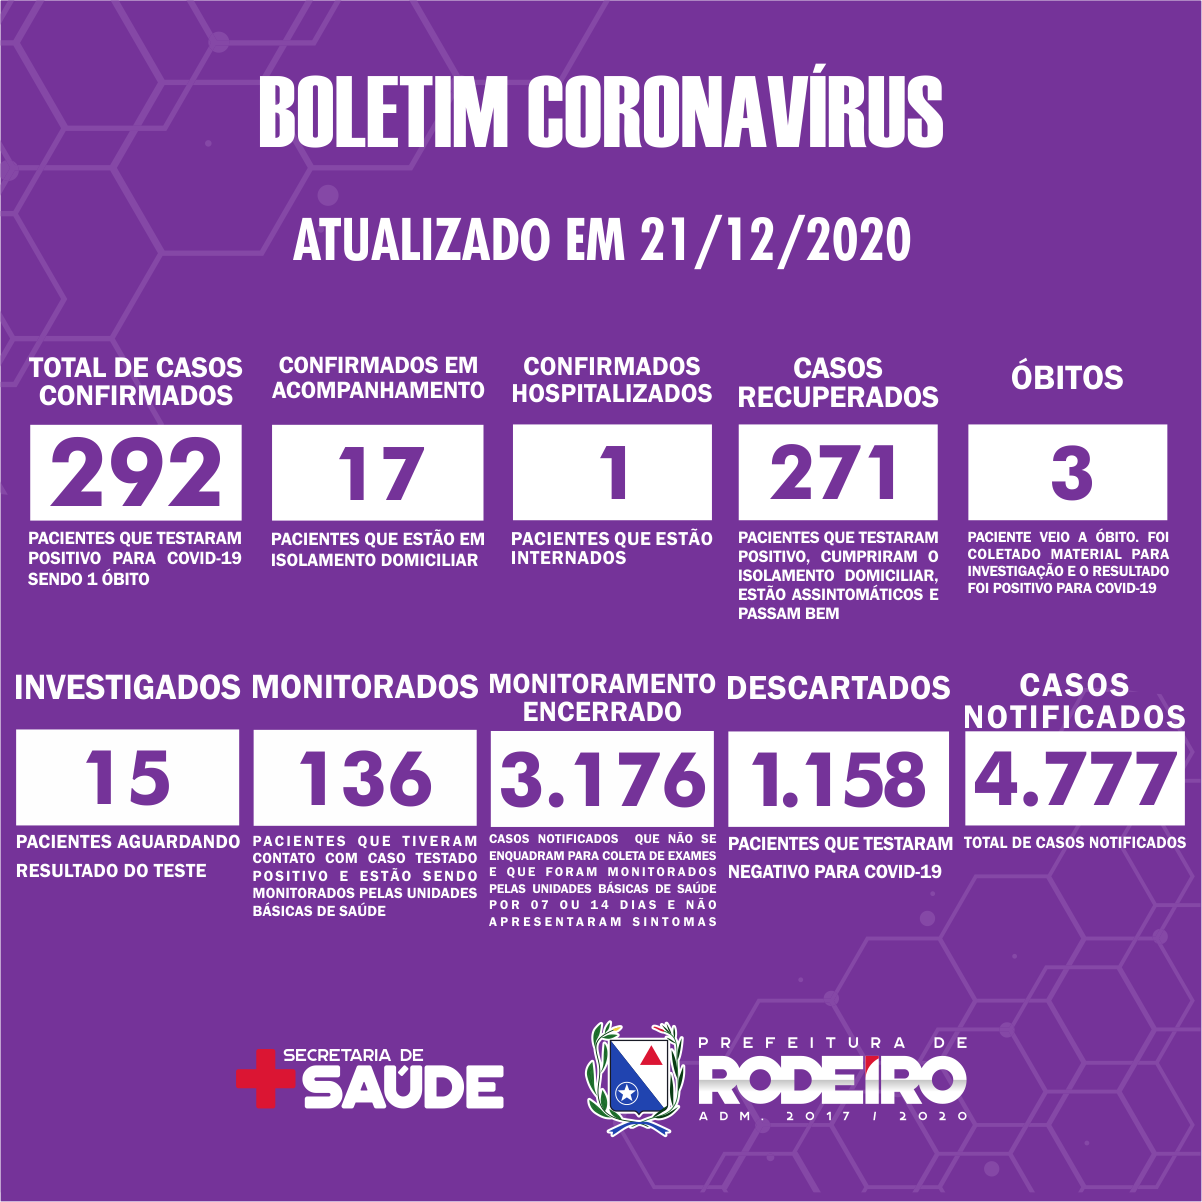 Boletim Epidemiológico do Município de Rodeiro sobre coronavírus, atualizado em 21/12/2020